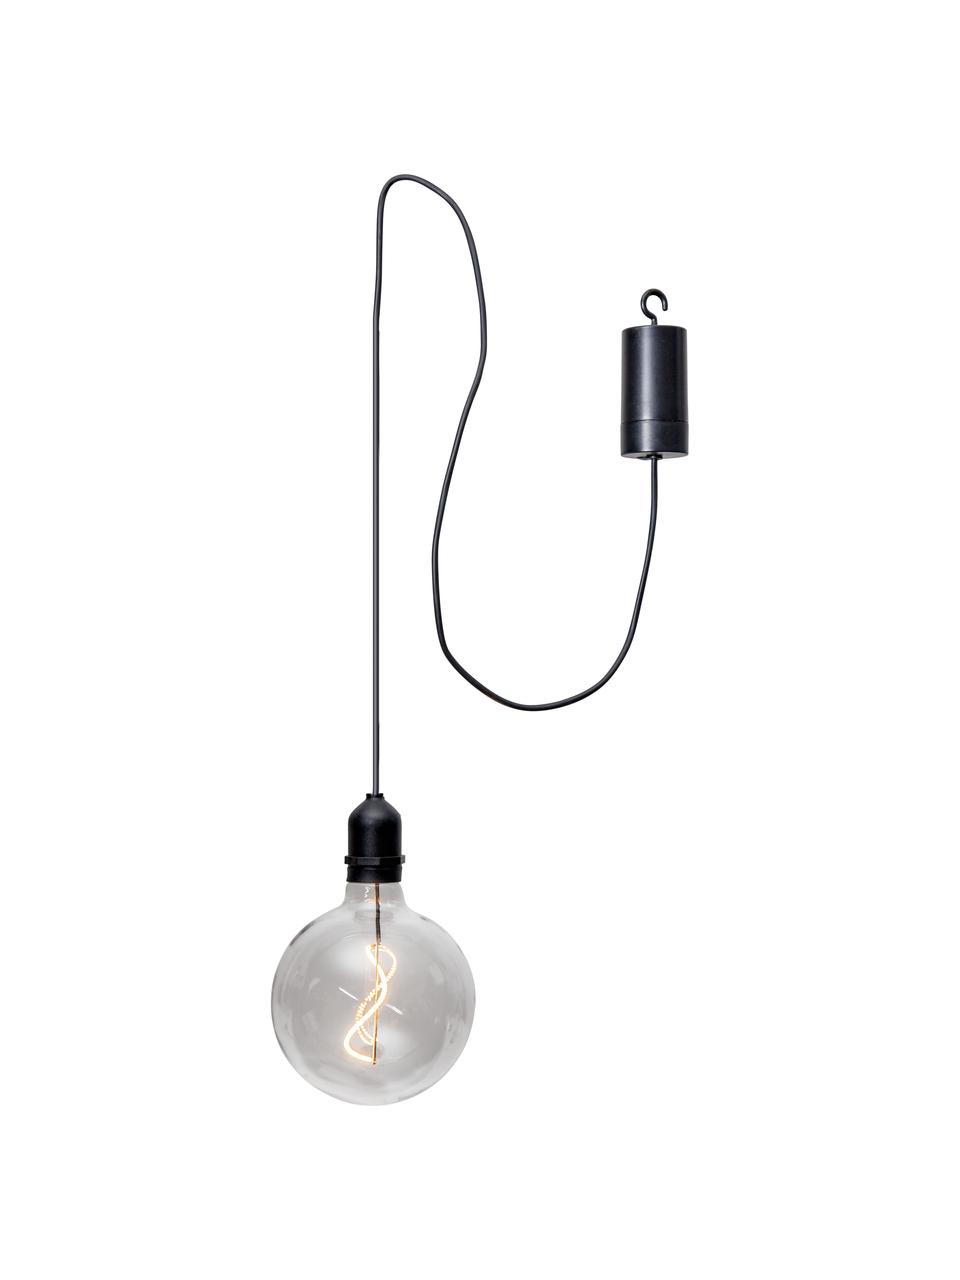 Mobilna lampa wisząca z timerem Bowl, Transparentny, czarny, S 13 x W 18 cm